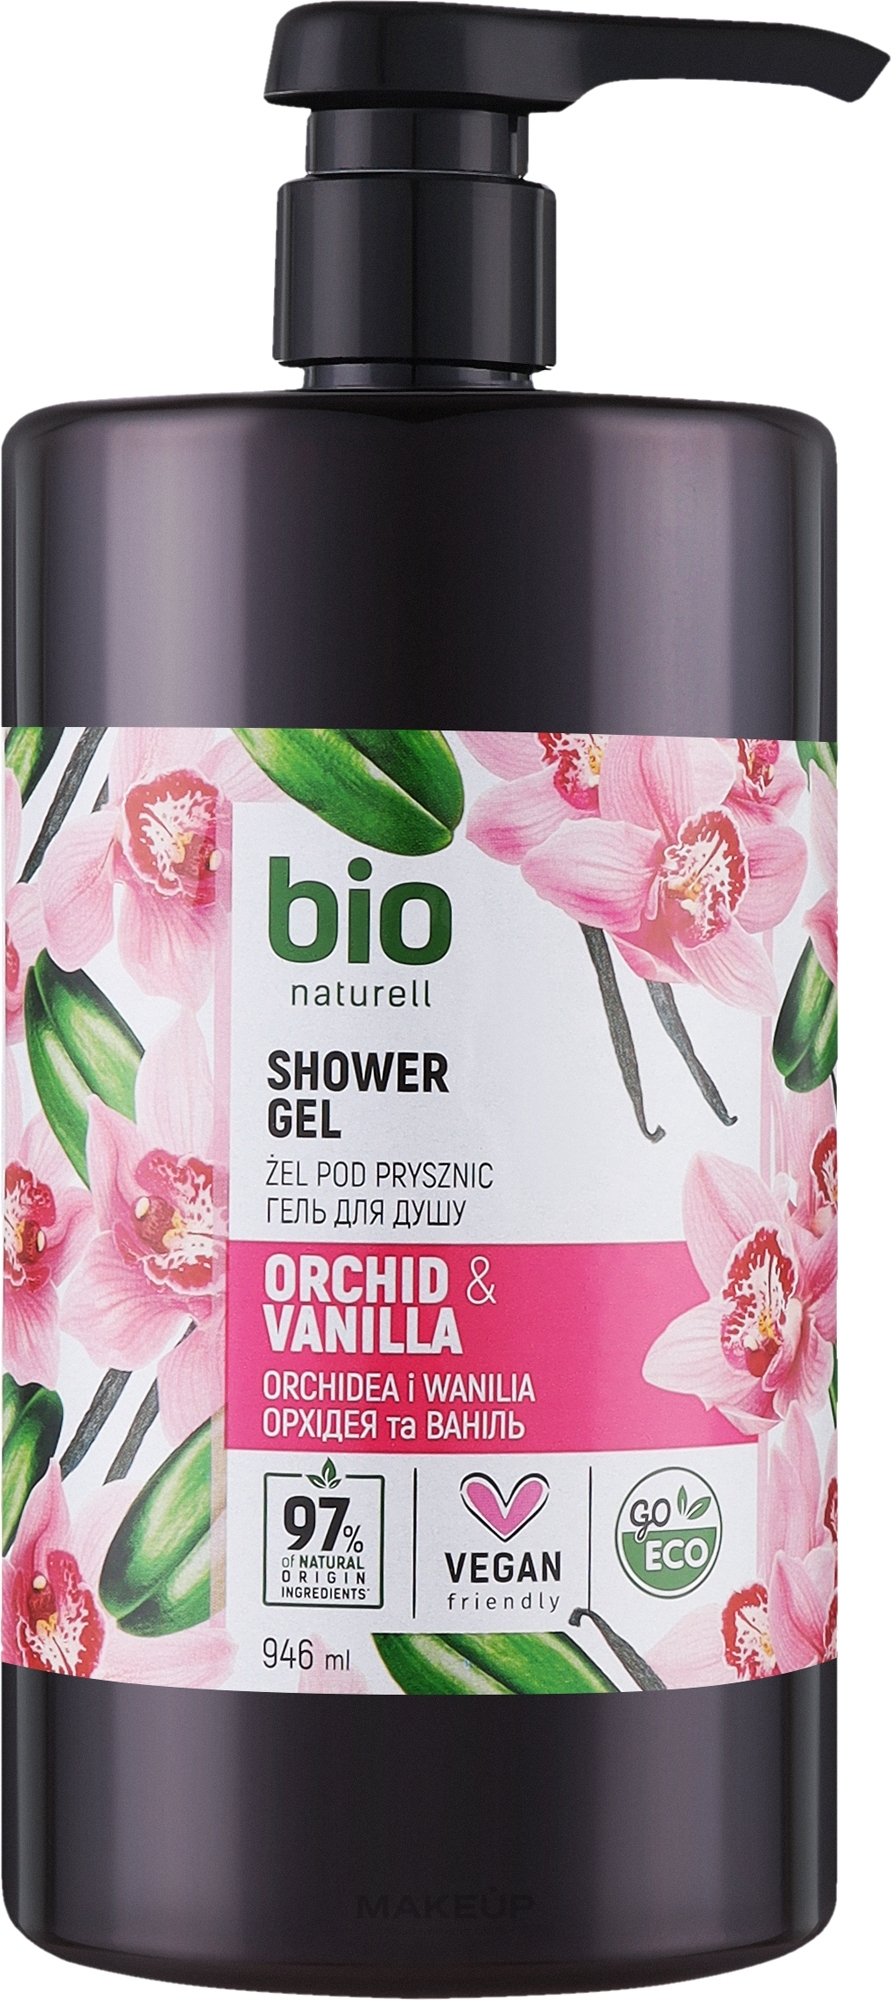 Крем-гель для душа "Орхидея и ваниль" с помпой - Bio Naturell Orchid & Vanilla Сreamy Shower Gel — фото 946ml